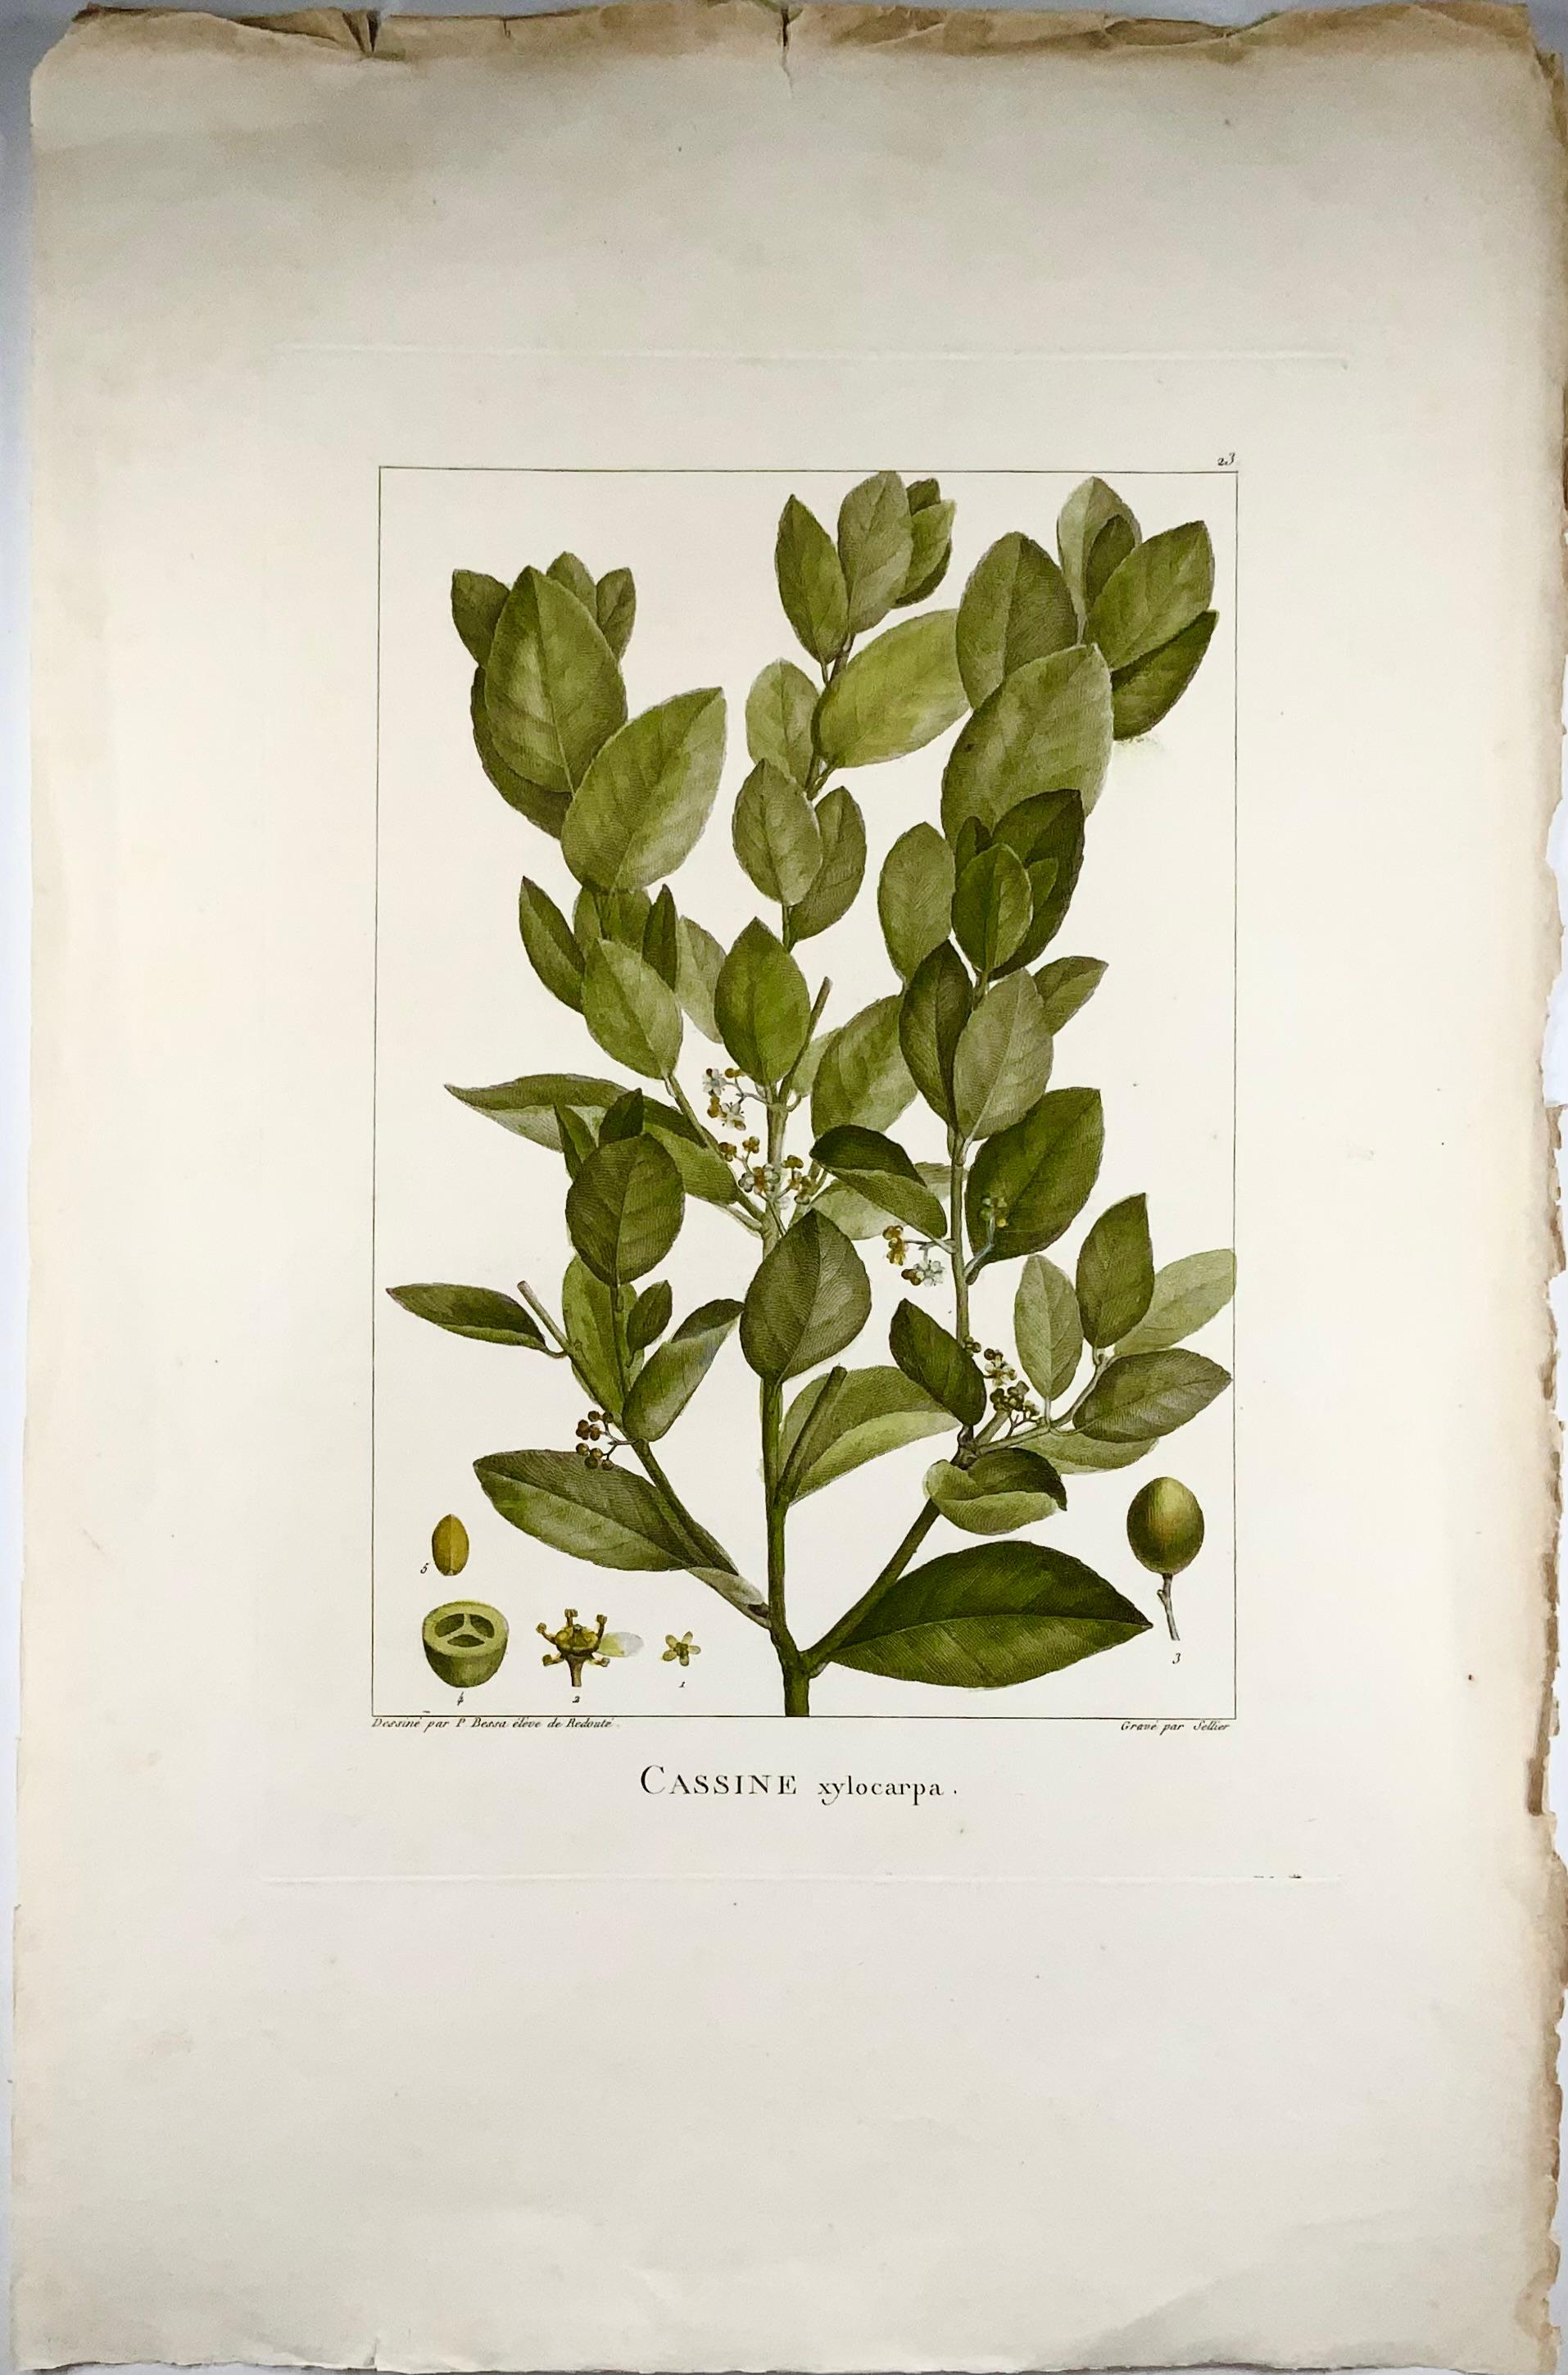 Redouté (1759-1840) et Joseph Bessa (1772-1846) d'après ; gravé par Pierre-Joseph (1759-1840).

Dimensions

Hauteur : 51 cm (20,08 in.)

Largeur : 34 cm (13,39 in.)

De la série :

VENTENAT, Etienne Pierre (1757-1808). 

Choix de plantes, dont la